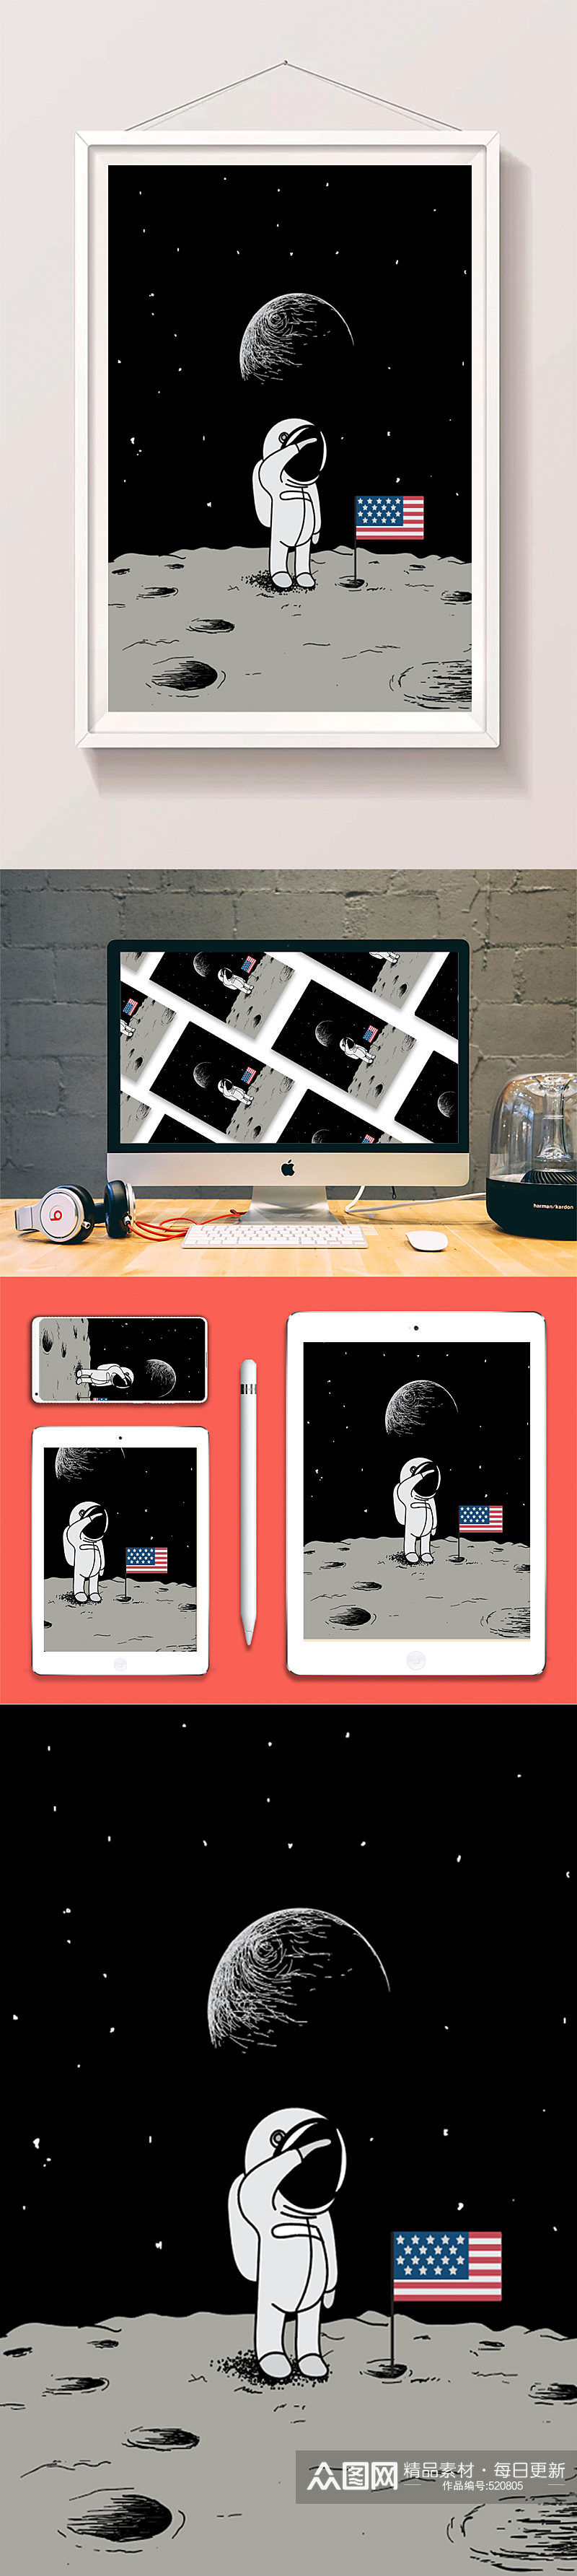 创意黑白宇航员登月可爱插画素材